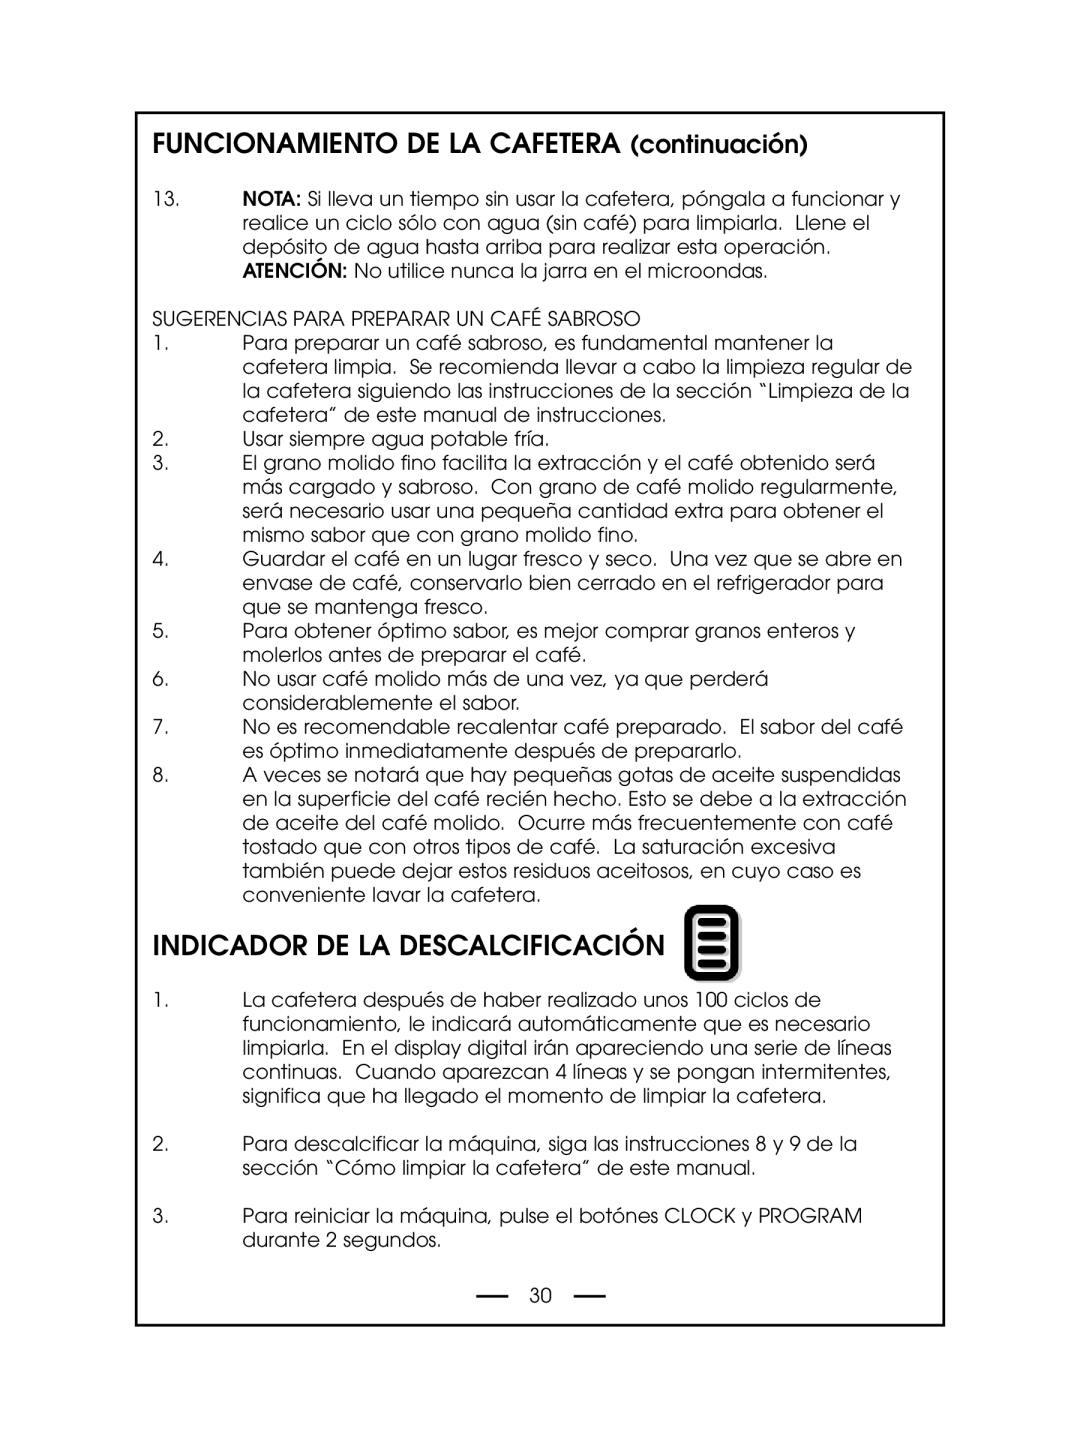 DeLonghi DCM485 instruction manual Indicador De La Descalcificación, FUNCIONAMIENTO DE LA CAFETERA continuación 